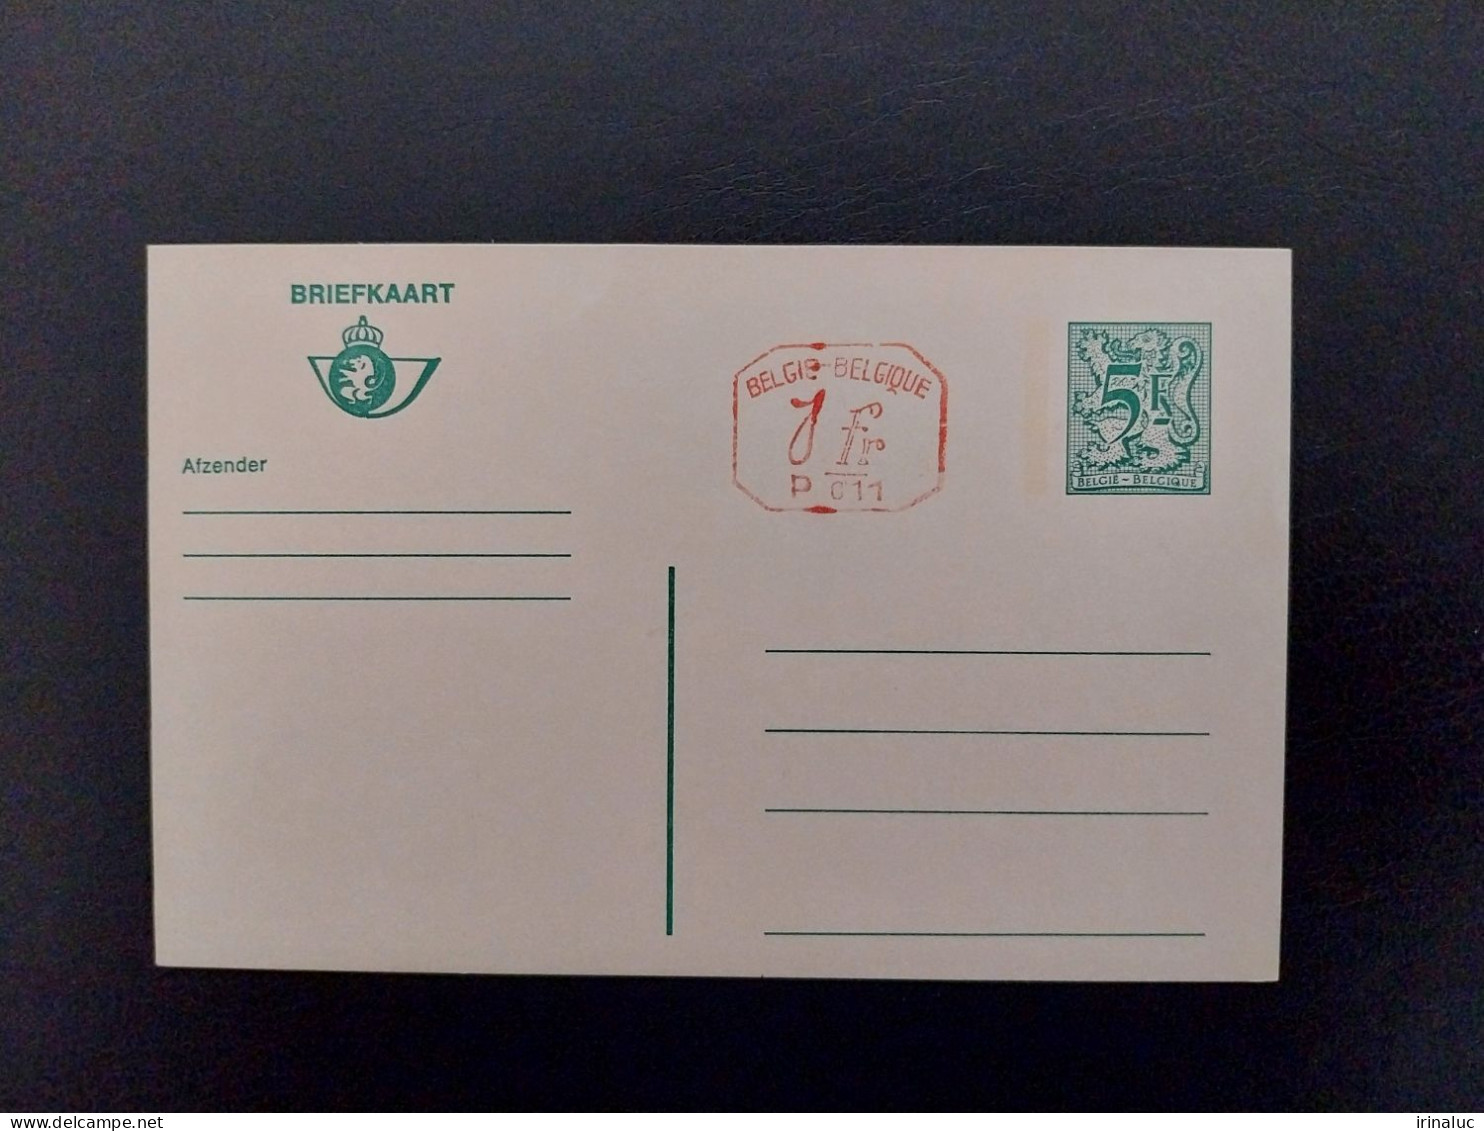 Briefkaart 187-IV P011 - Cartes Postales 1951-..